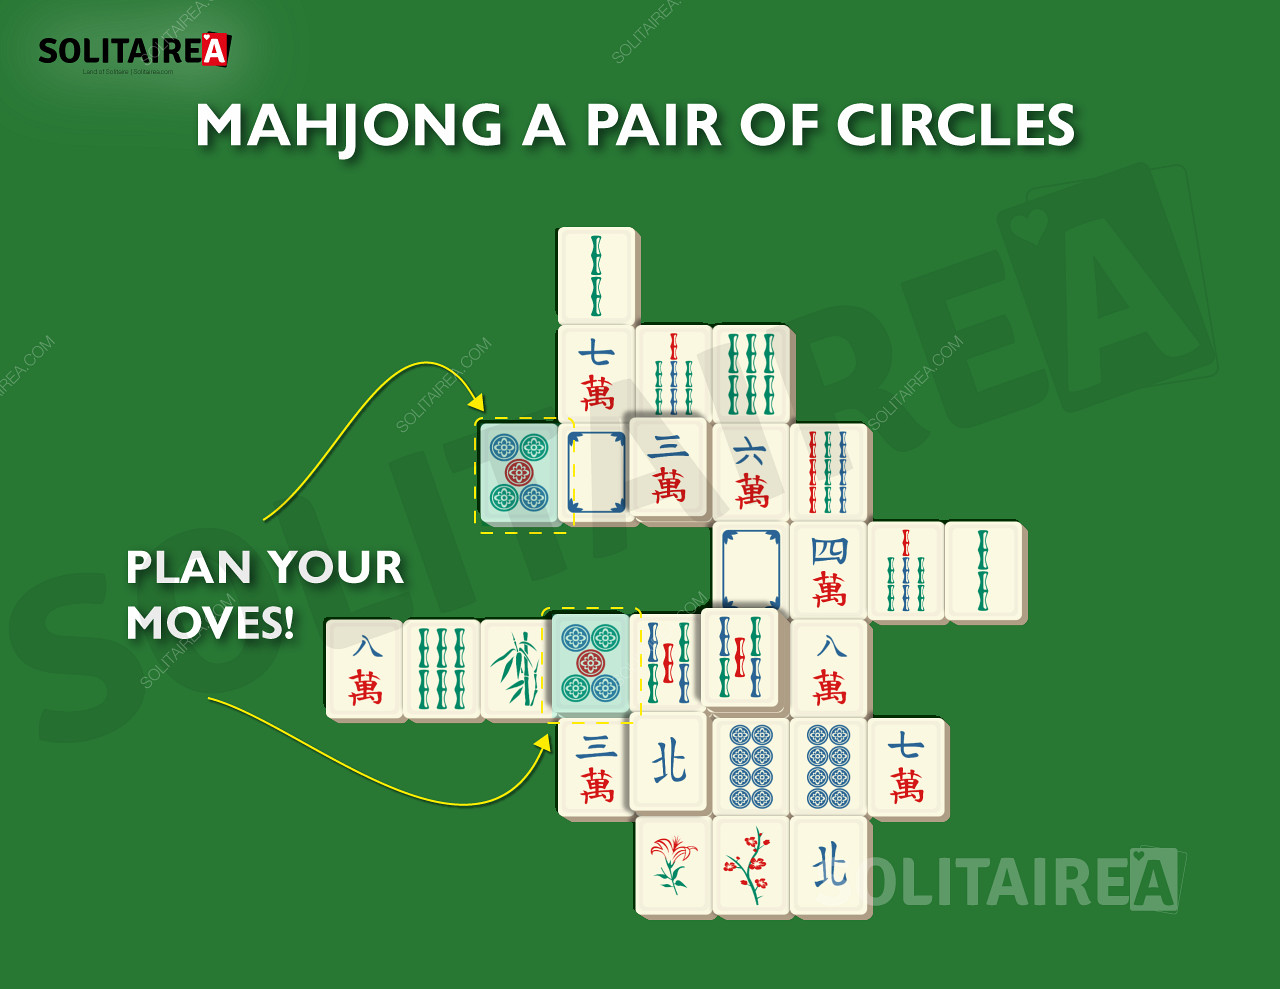 Εικόνα που δείχνει πώς να σχεδιάζετε τις κινήσεις σας ως τρόπο ανάπτυξης μιας νικηφόρας στρατηγικής.